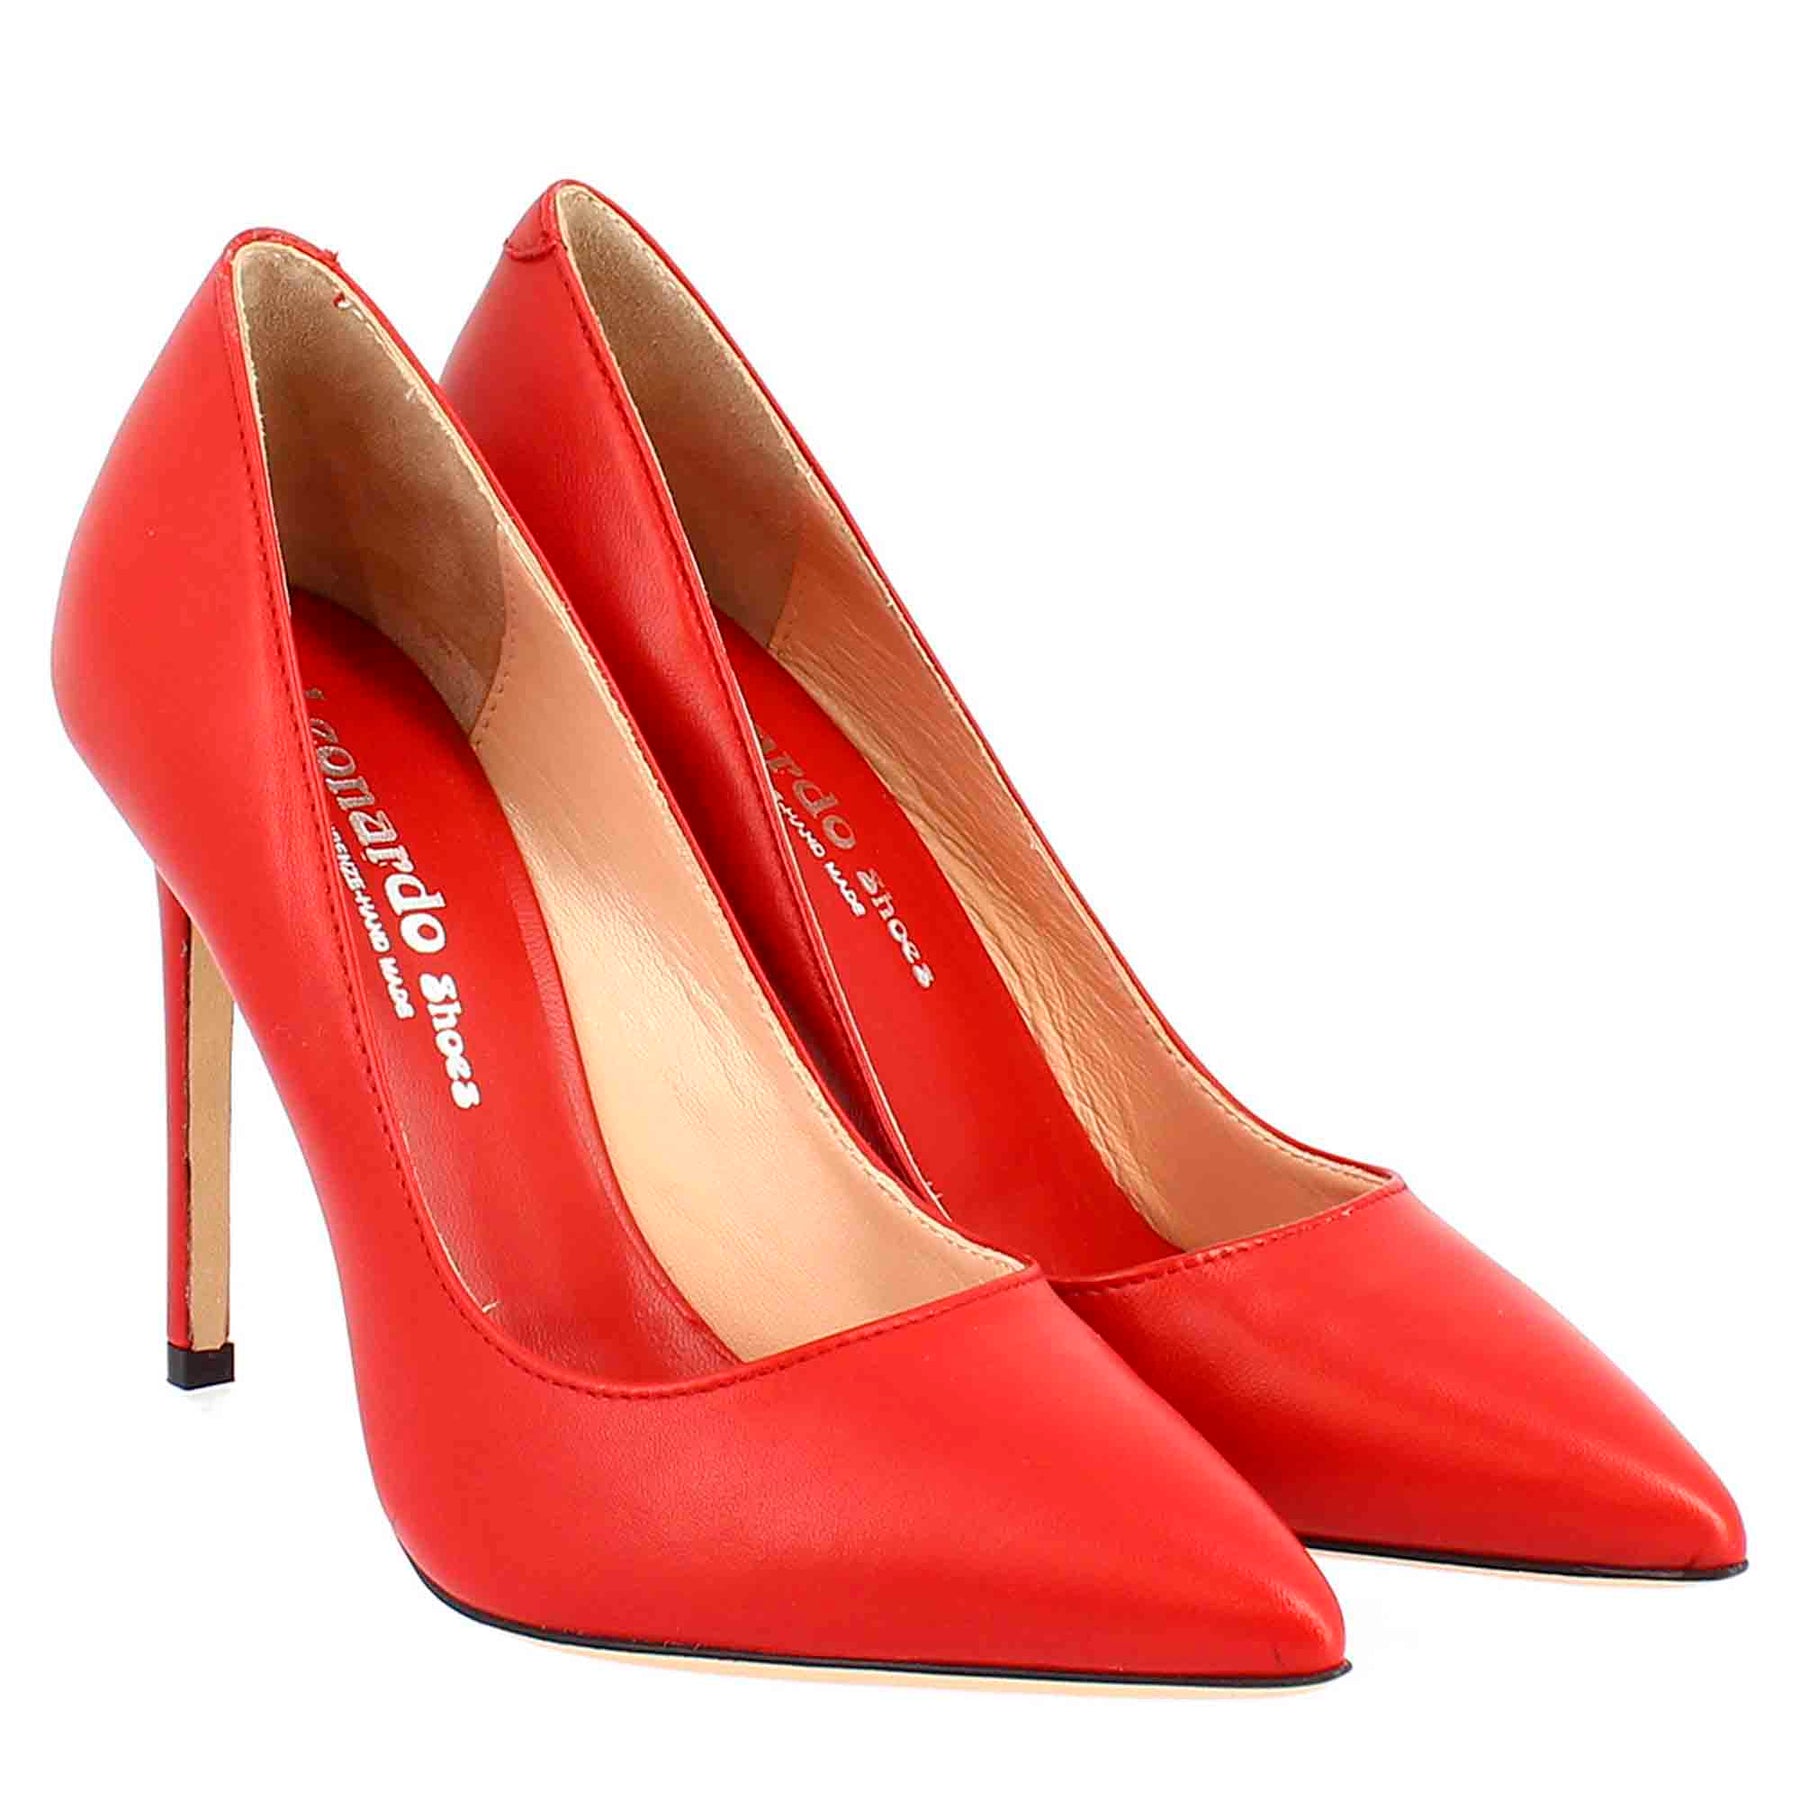 High Heels Colorful | Shoes Women Heels | High Heels Women | Stilettos Pumps  - Women - Aliexpress